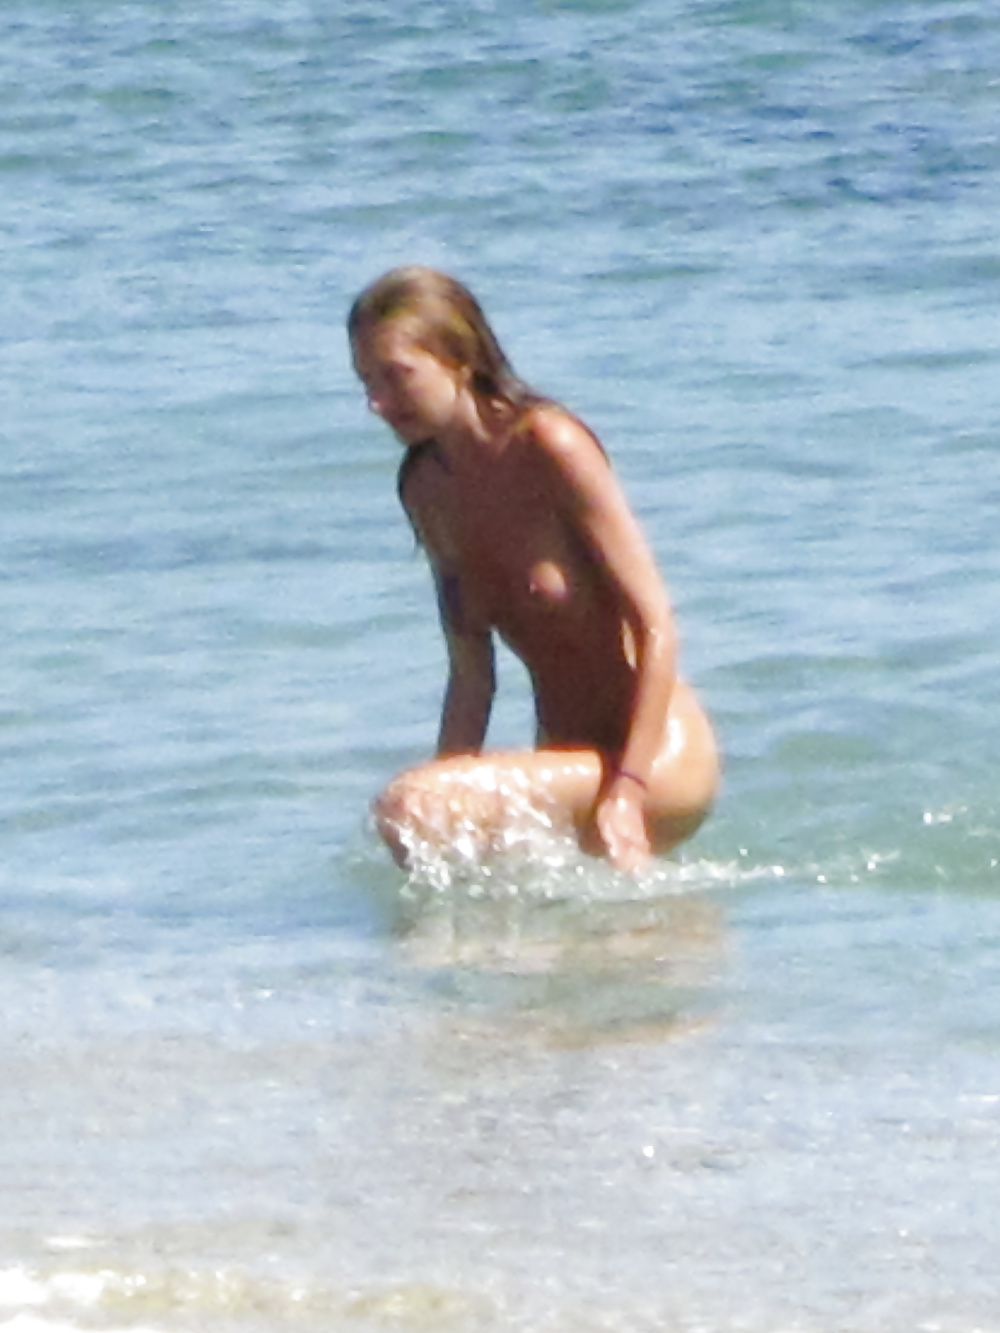 Free Paralia gymniston kalokairi 2015 - nude beach summer 2015 photos